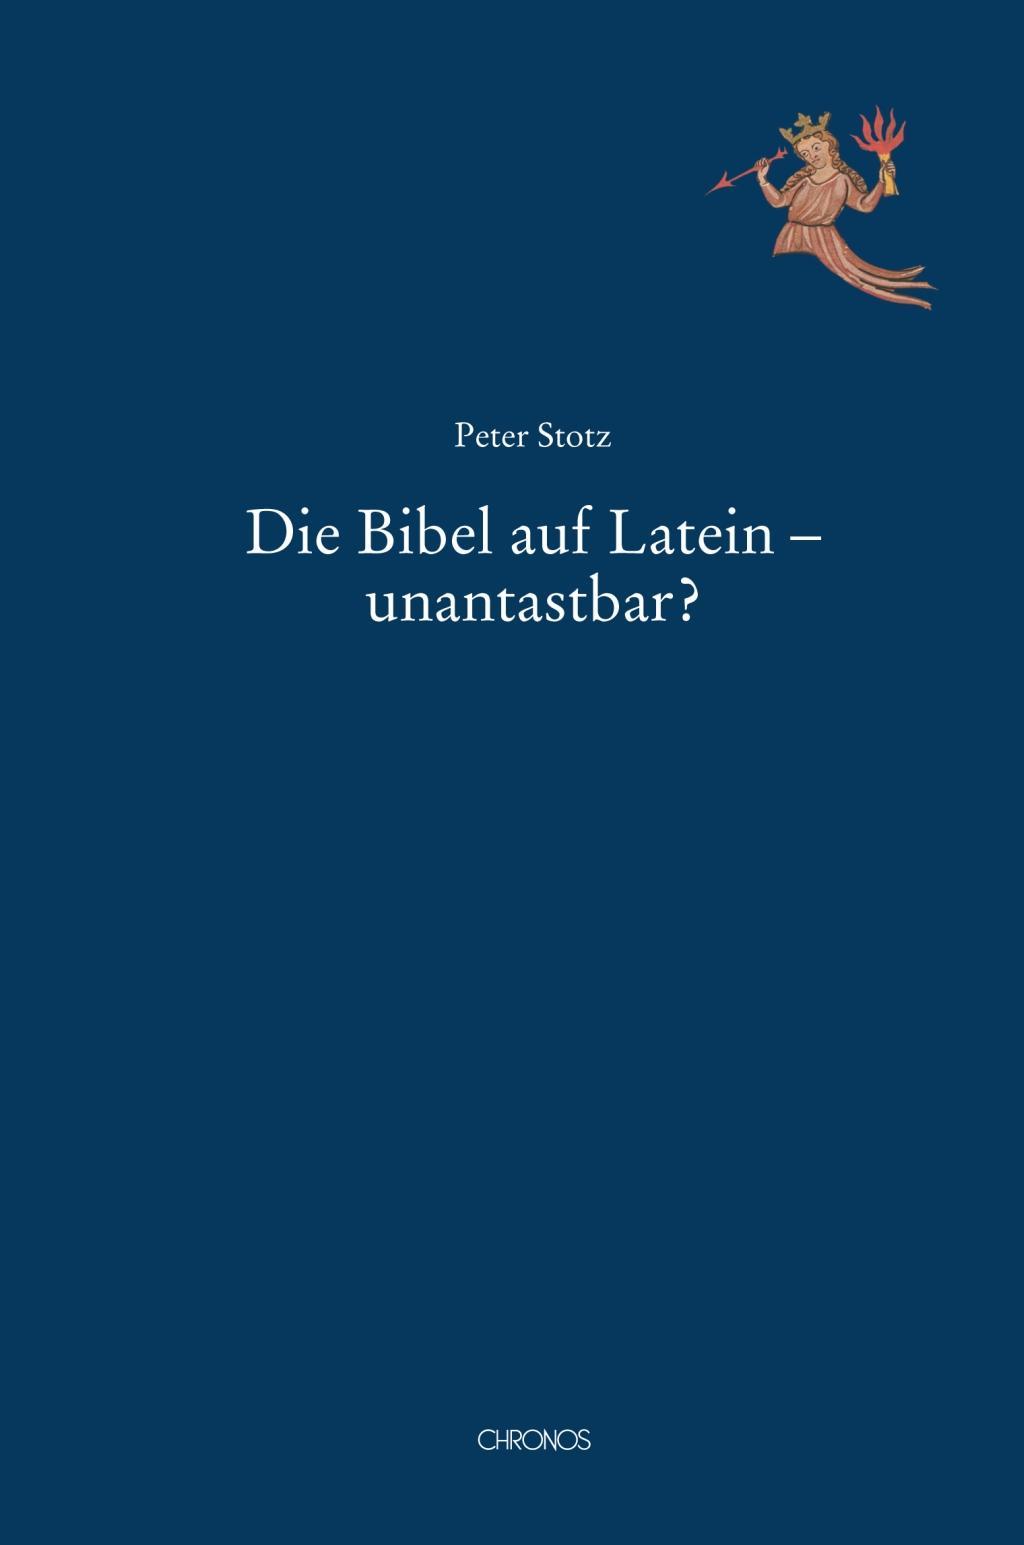 Die Bibel auf Latein - unantastbar? - Stotz, Peter